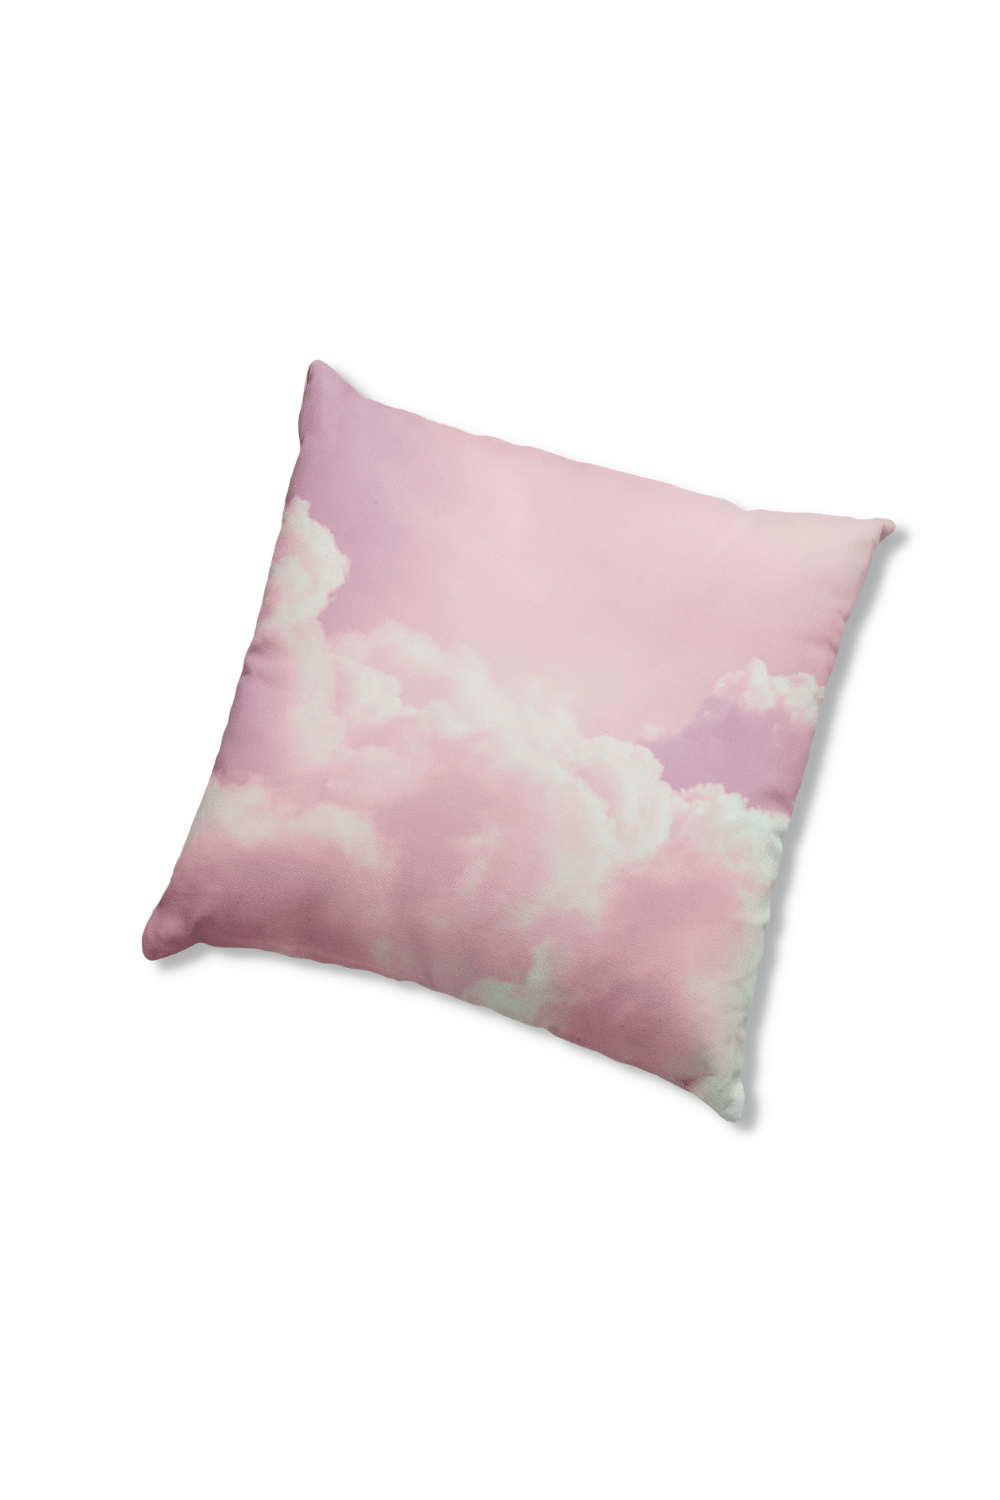 Pillows - Dorm Room Pillow - Pink Clouds